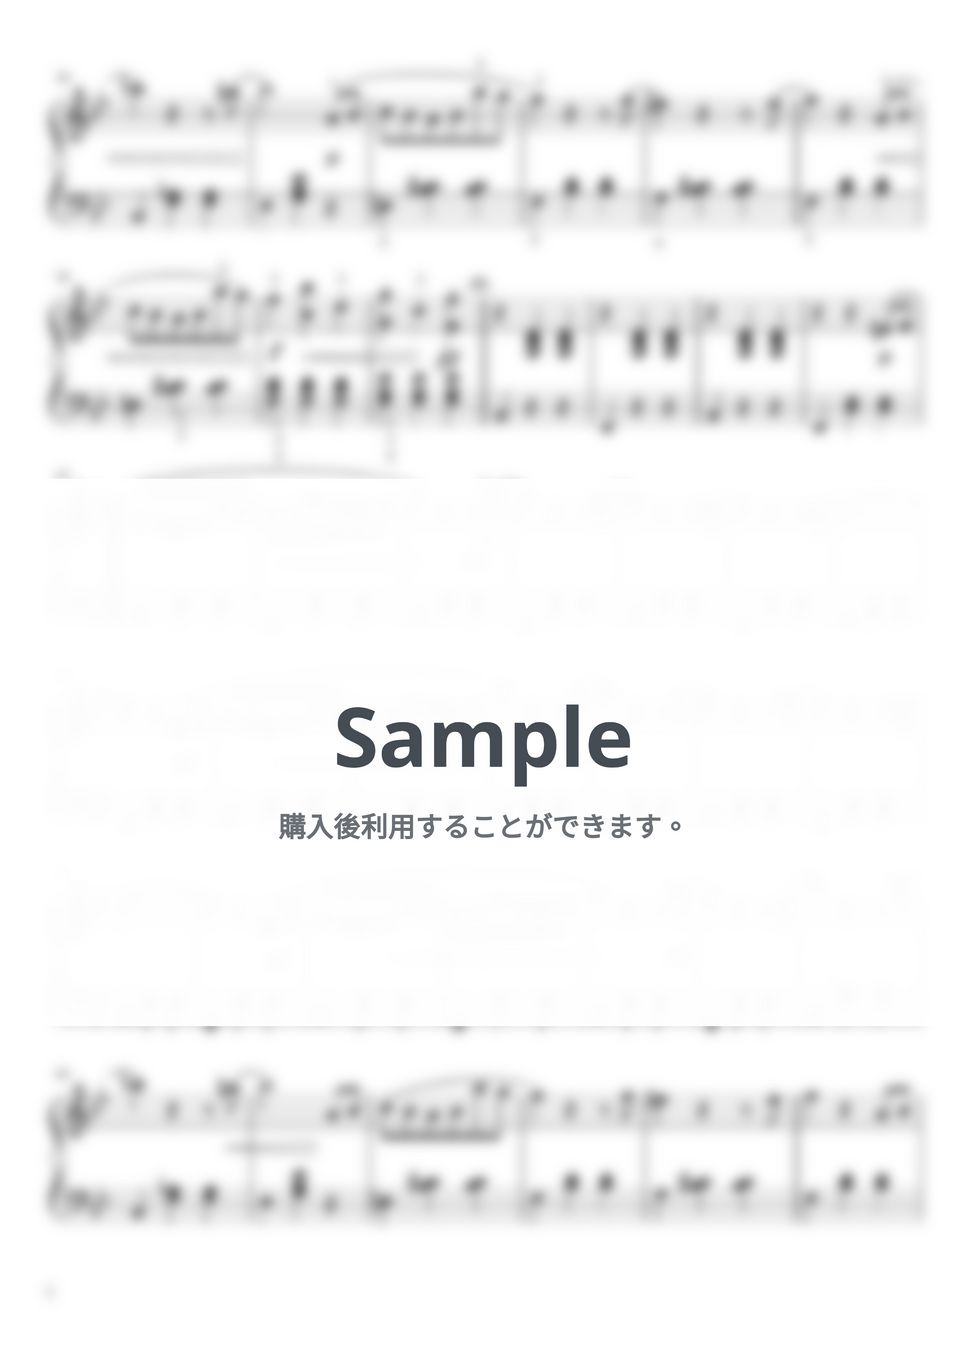 シュトラウス二世 - 春の声 (ピアノソロ中級 Fullver.) by pfkaori